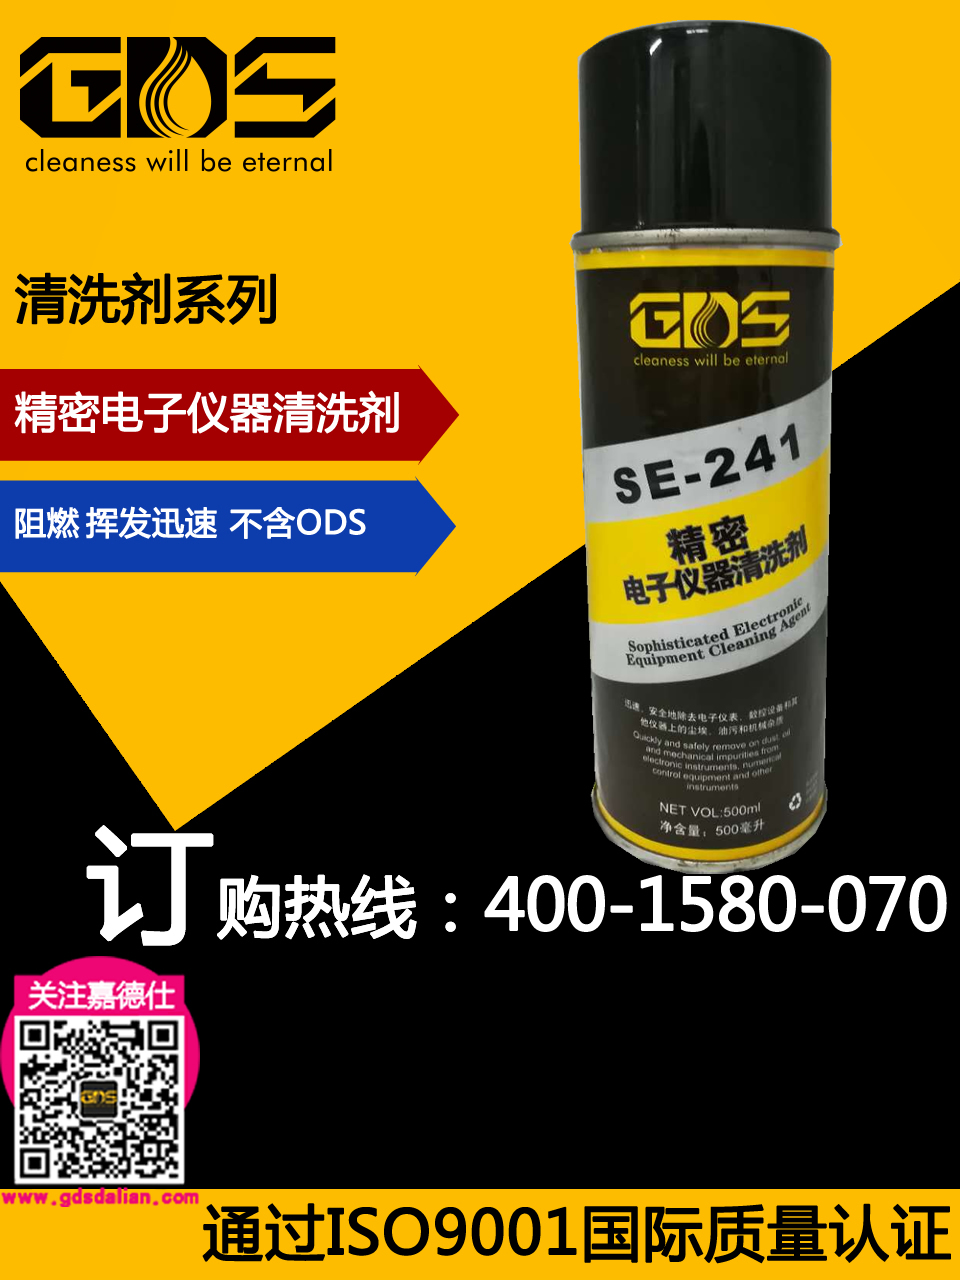 SE-241 精密电子仪器清洗剂